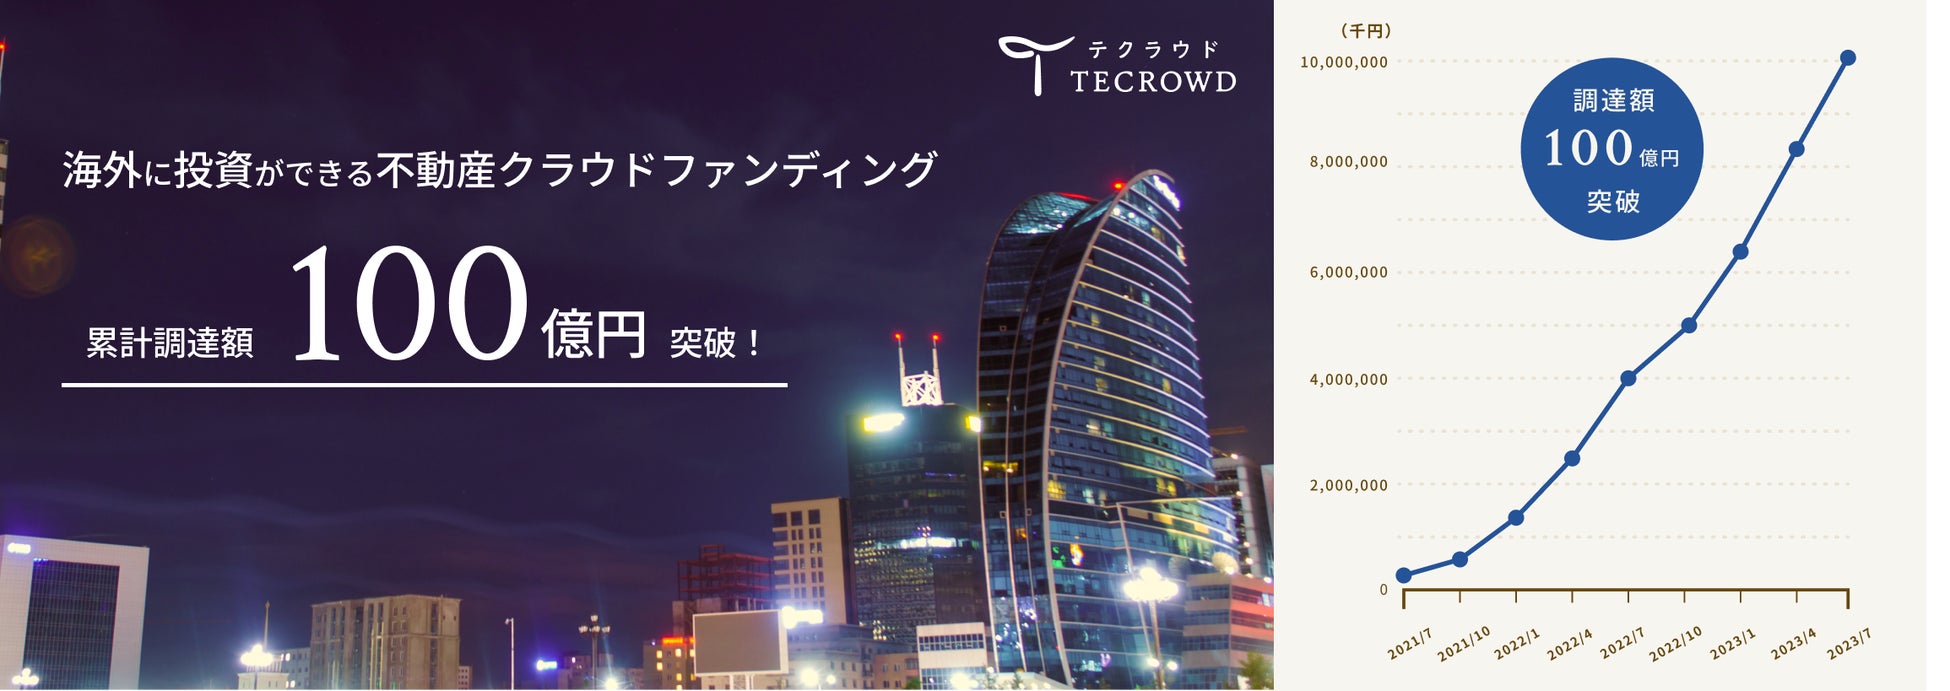 不動産クラウドファンディング「TECROWD」累計調達額100億円突破